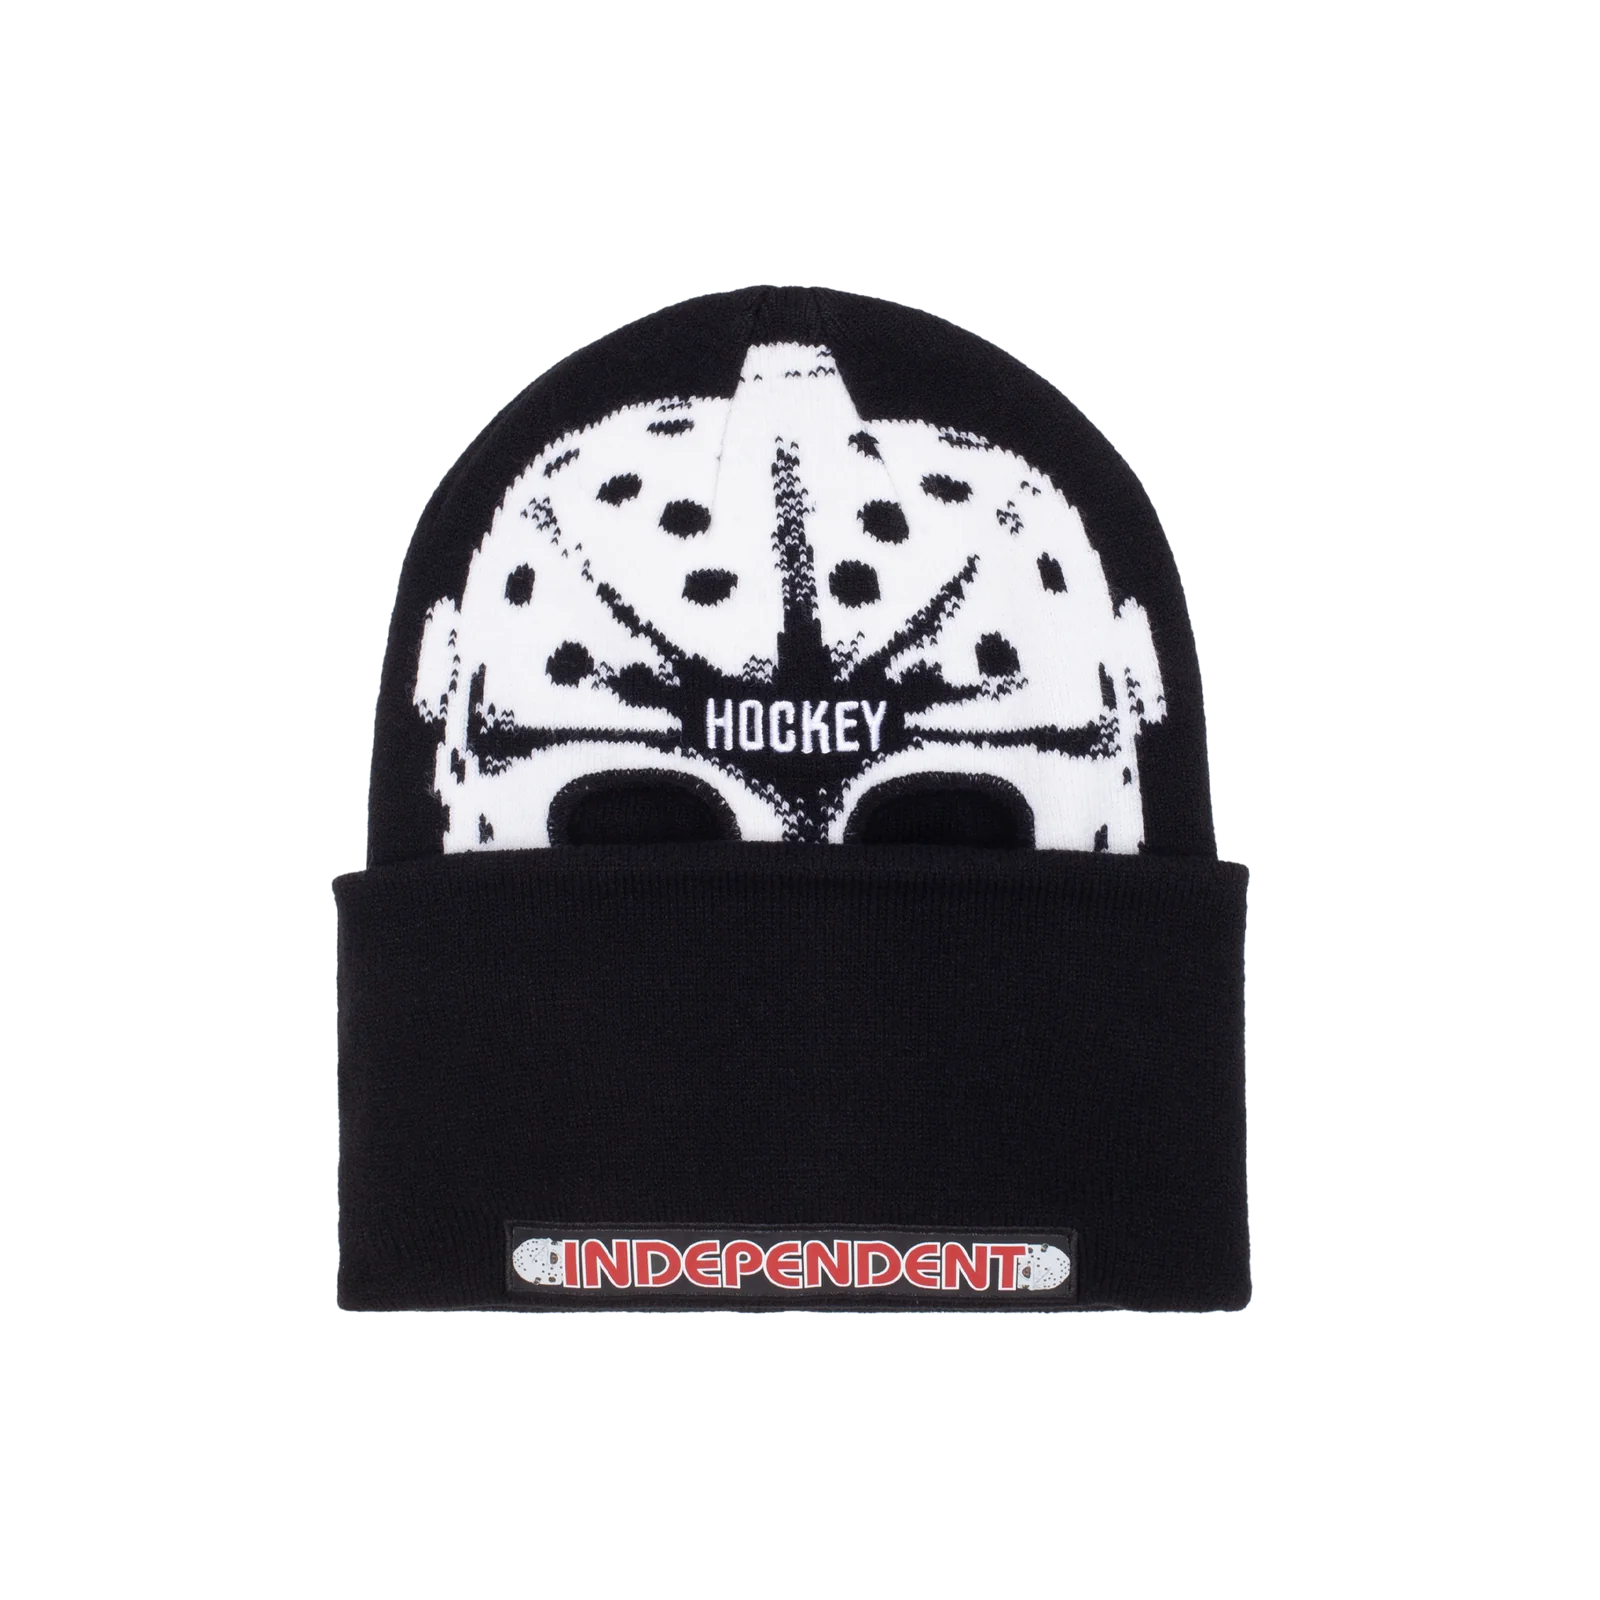 Hockey Skateboards x Independent Hockski Mask Beanie Beanie Hockey Skateboards 